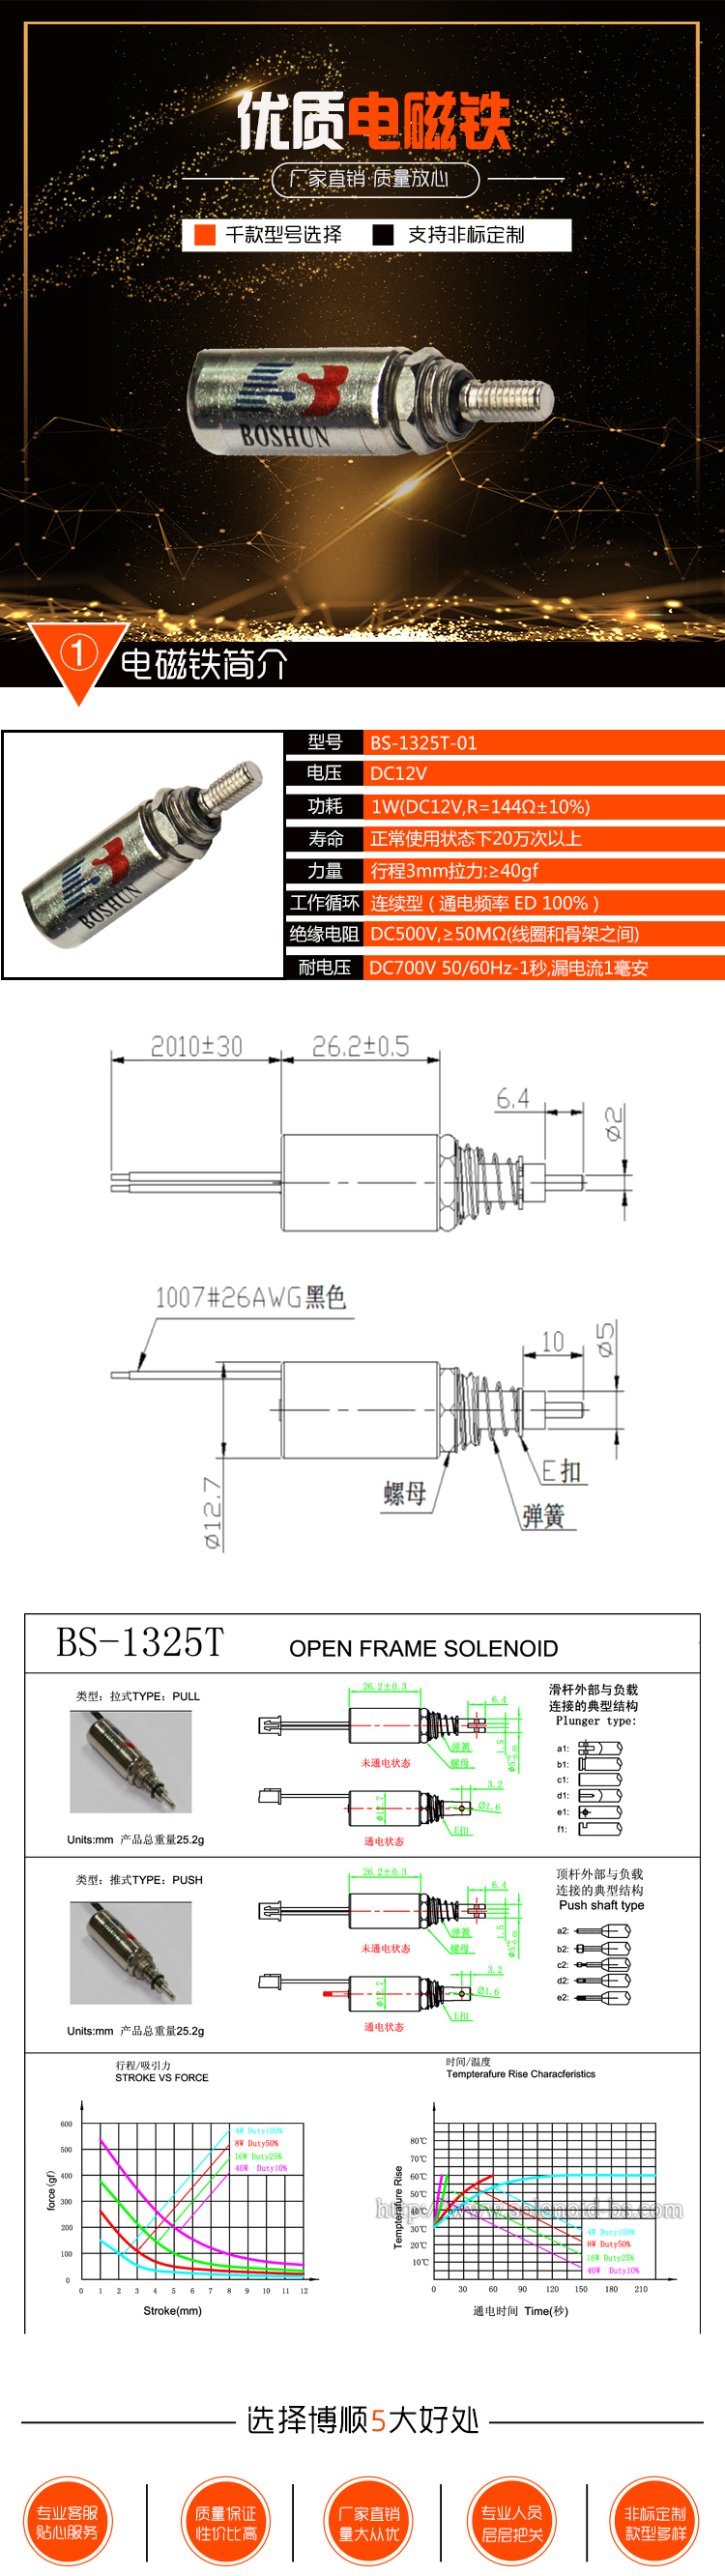 键盘测试机电磁铁 BS-1325T-01